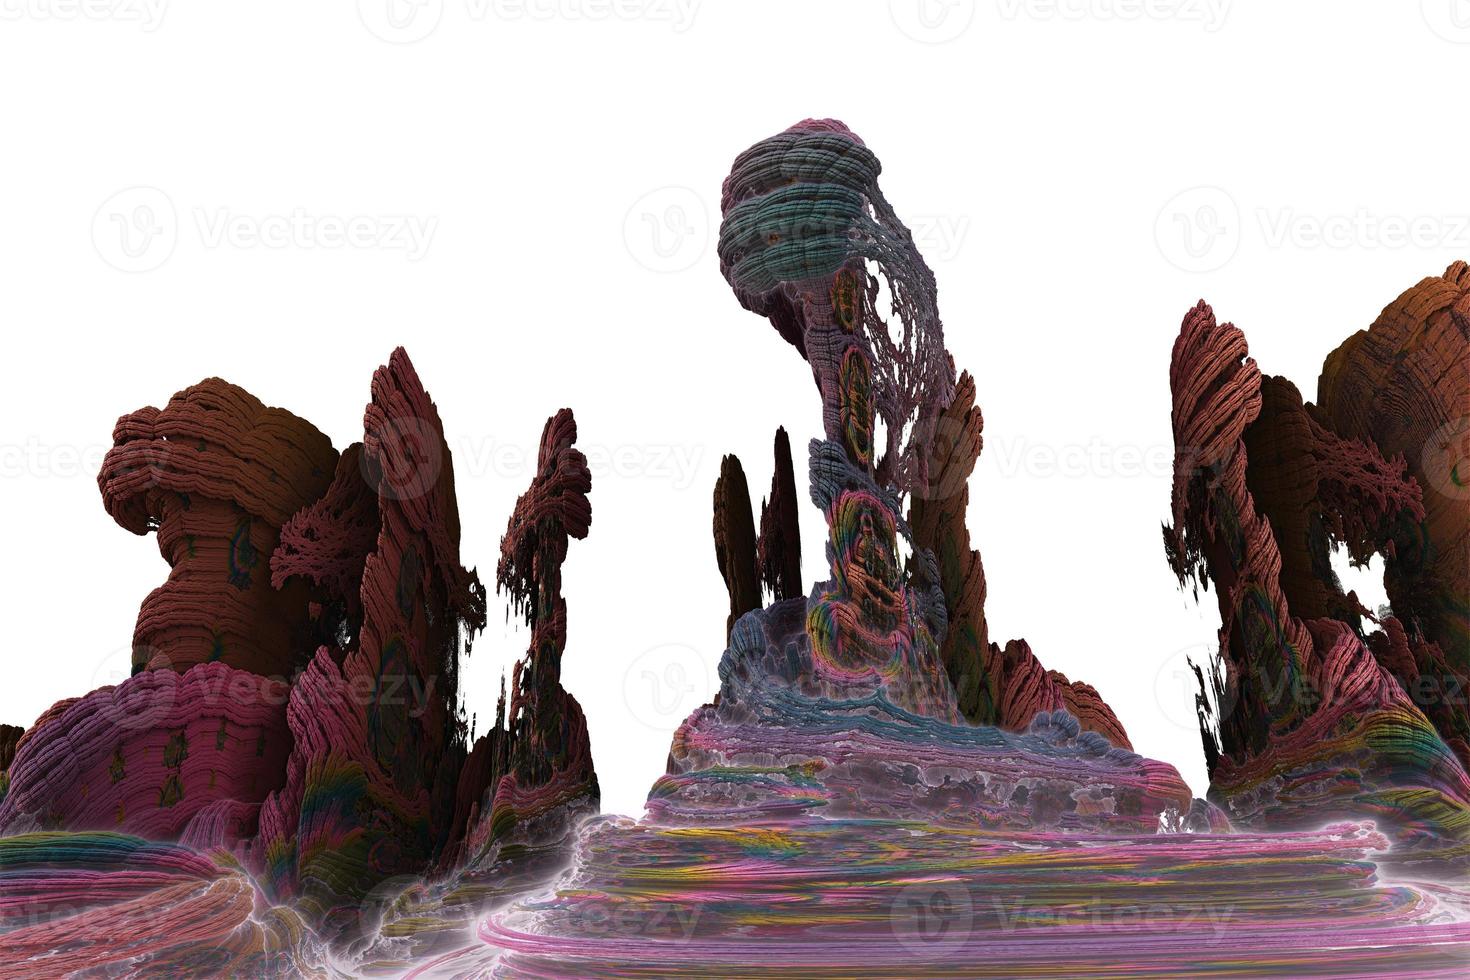 diseño fractal generado por ordenador abstracto. Ilustración de extraterrestres 3d de un hermoso conjunto de mandelbrot matemático infinito fractal. foto